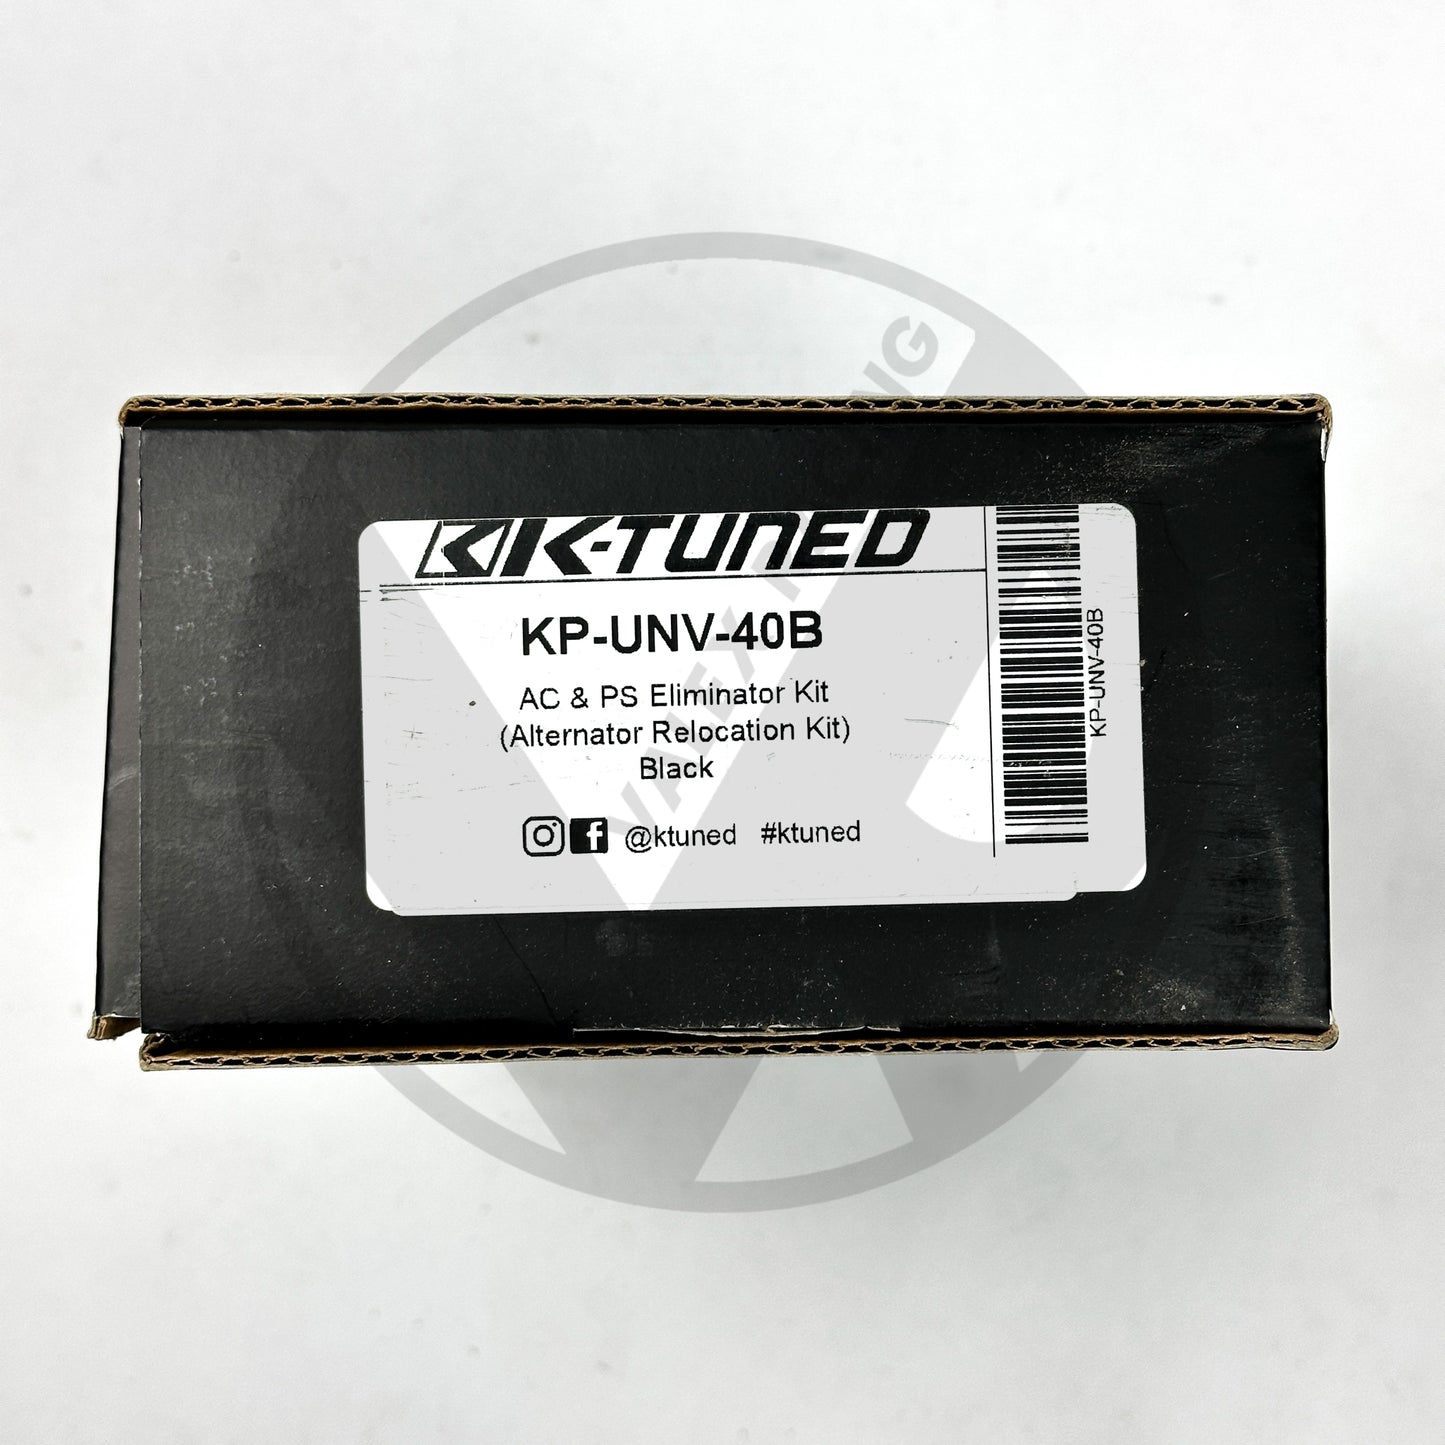 K-Tuned A/C & P/S Eliminator Kit For All K20 and K24 Engines